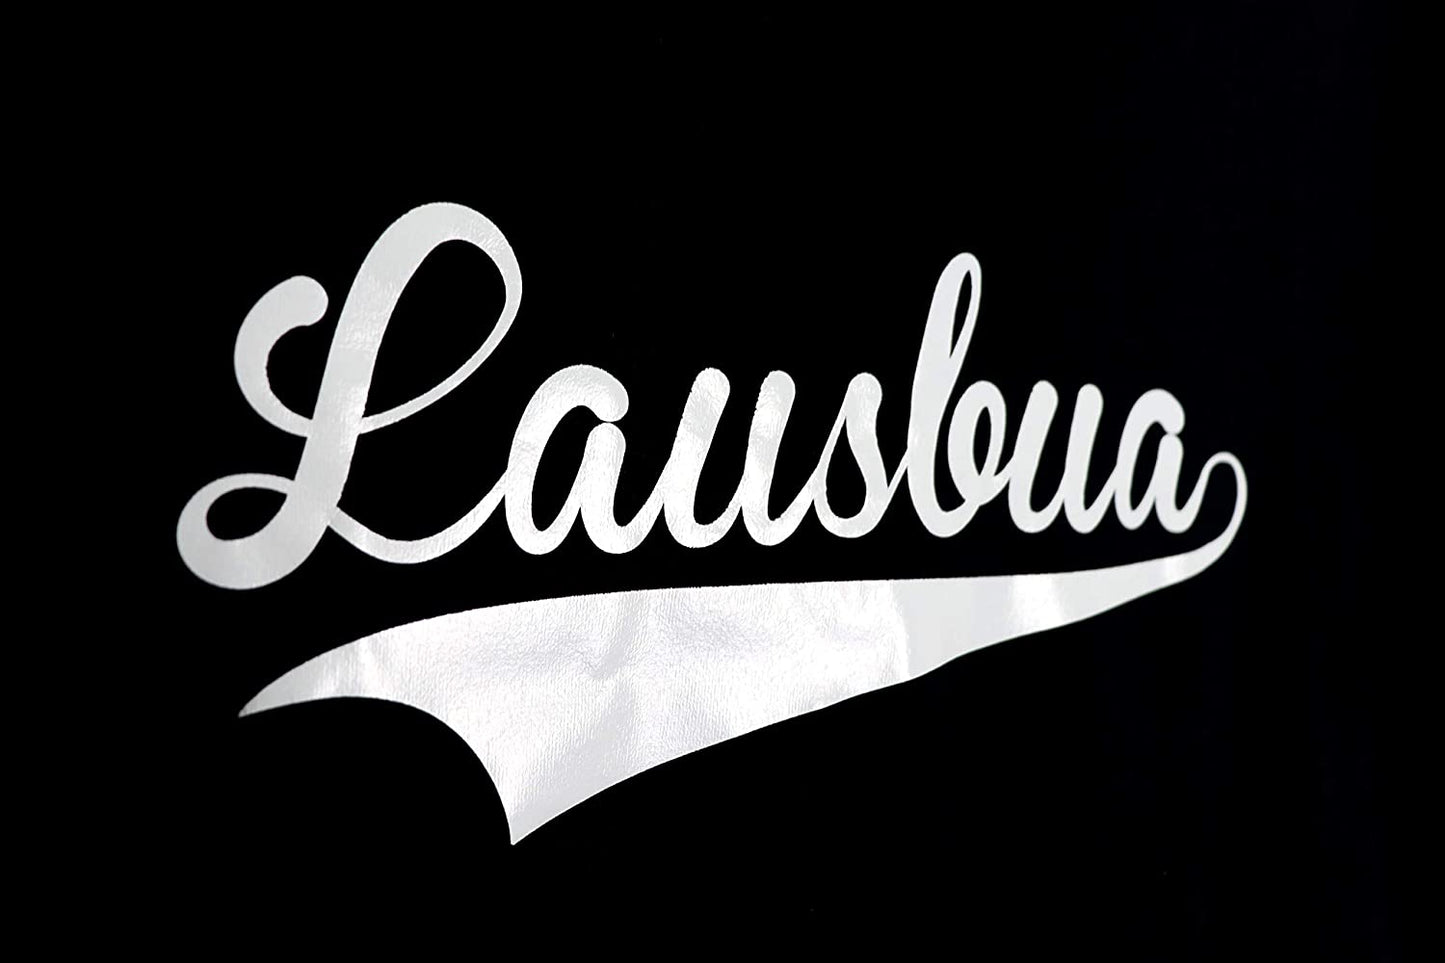 Schwarzes T-Shirt mit weissem Aufdruck Lausbua, Bayrisch Boarisch Bayern Dialekt, freche bayerische Buben (XL)